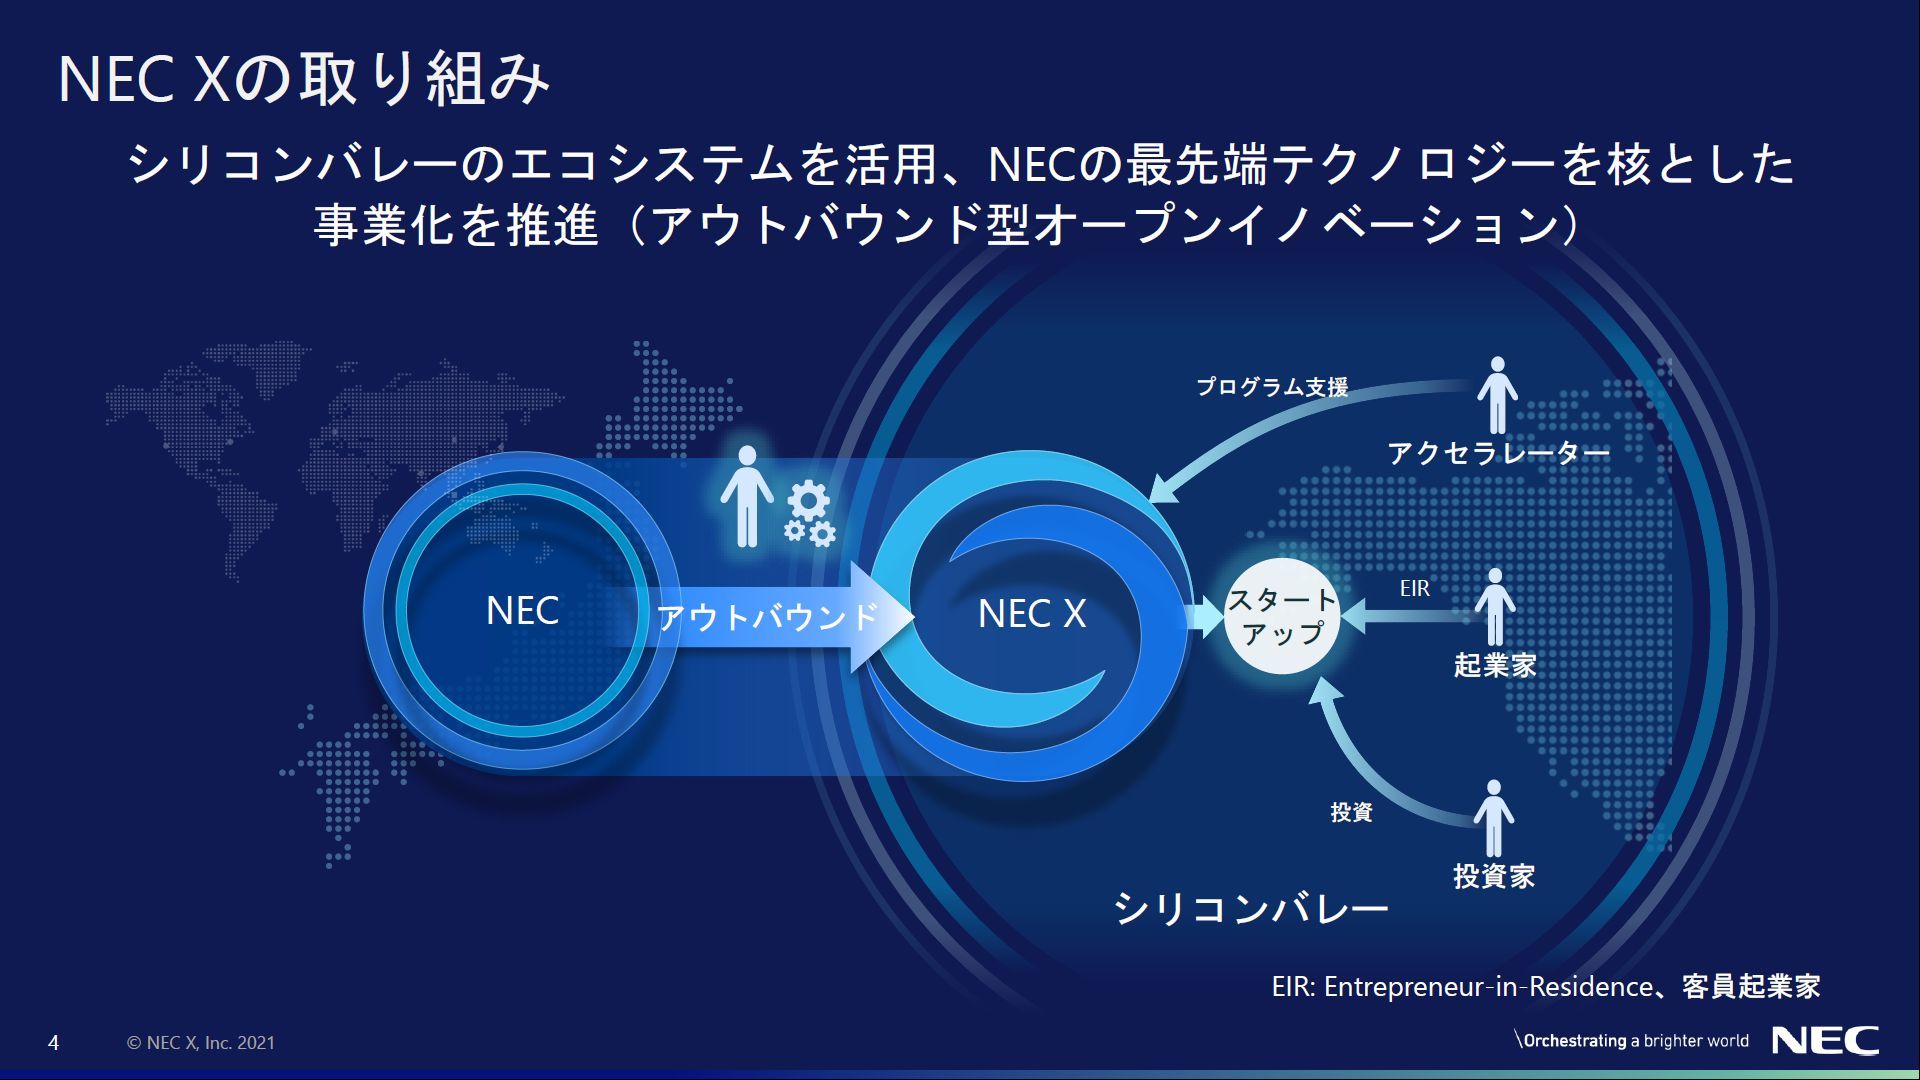 NECの技術はシリコンバレーで花開く、シーズから起業を狙う「NEC X」